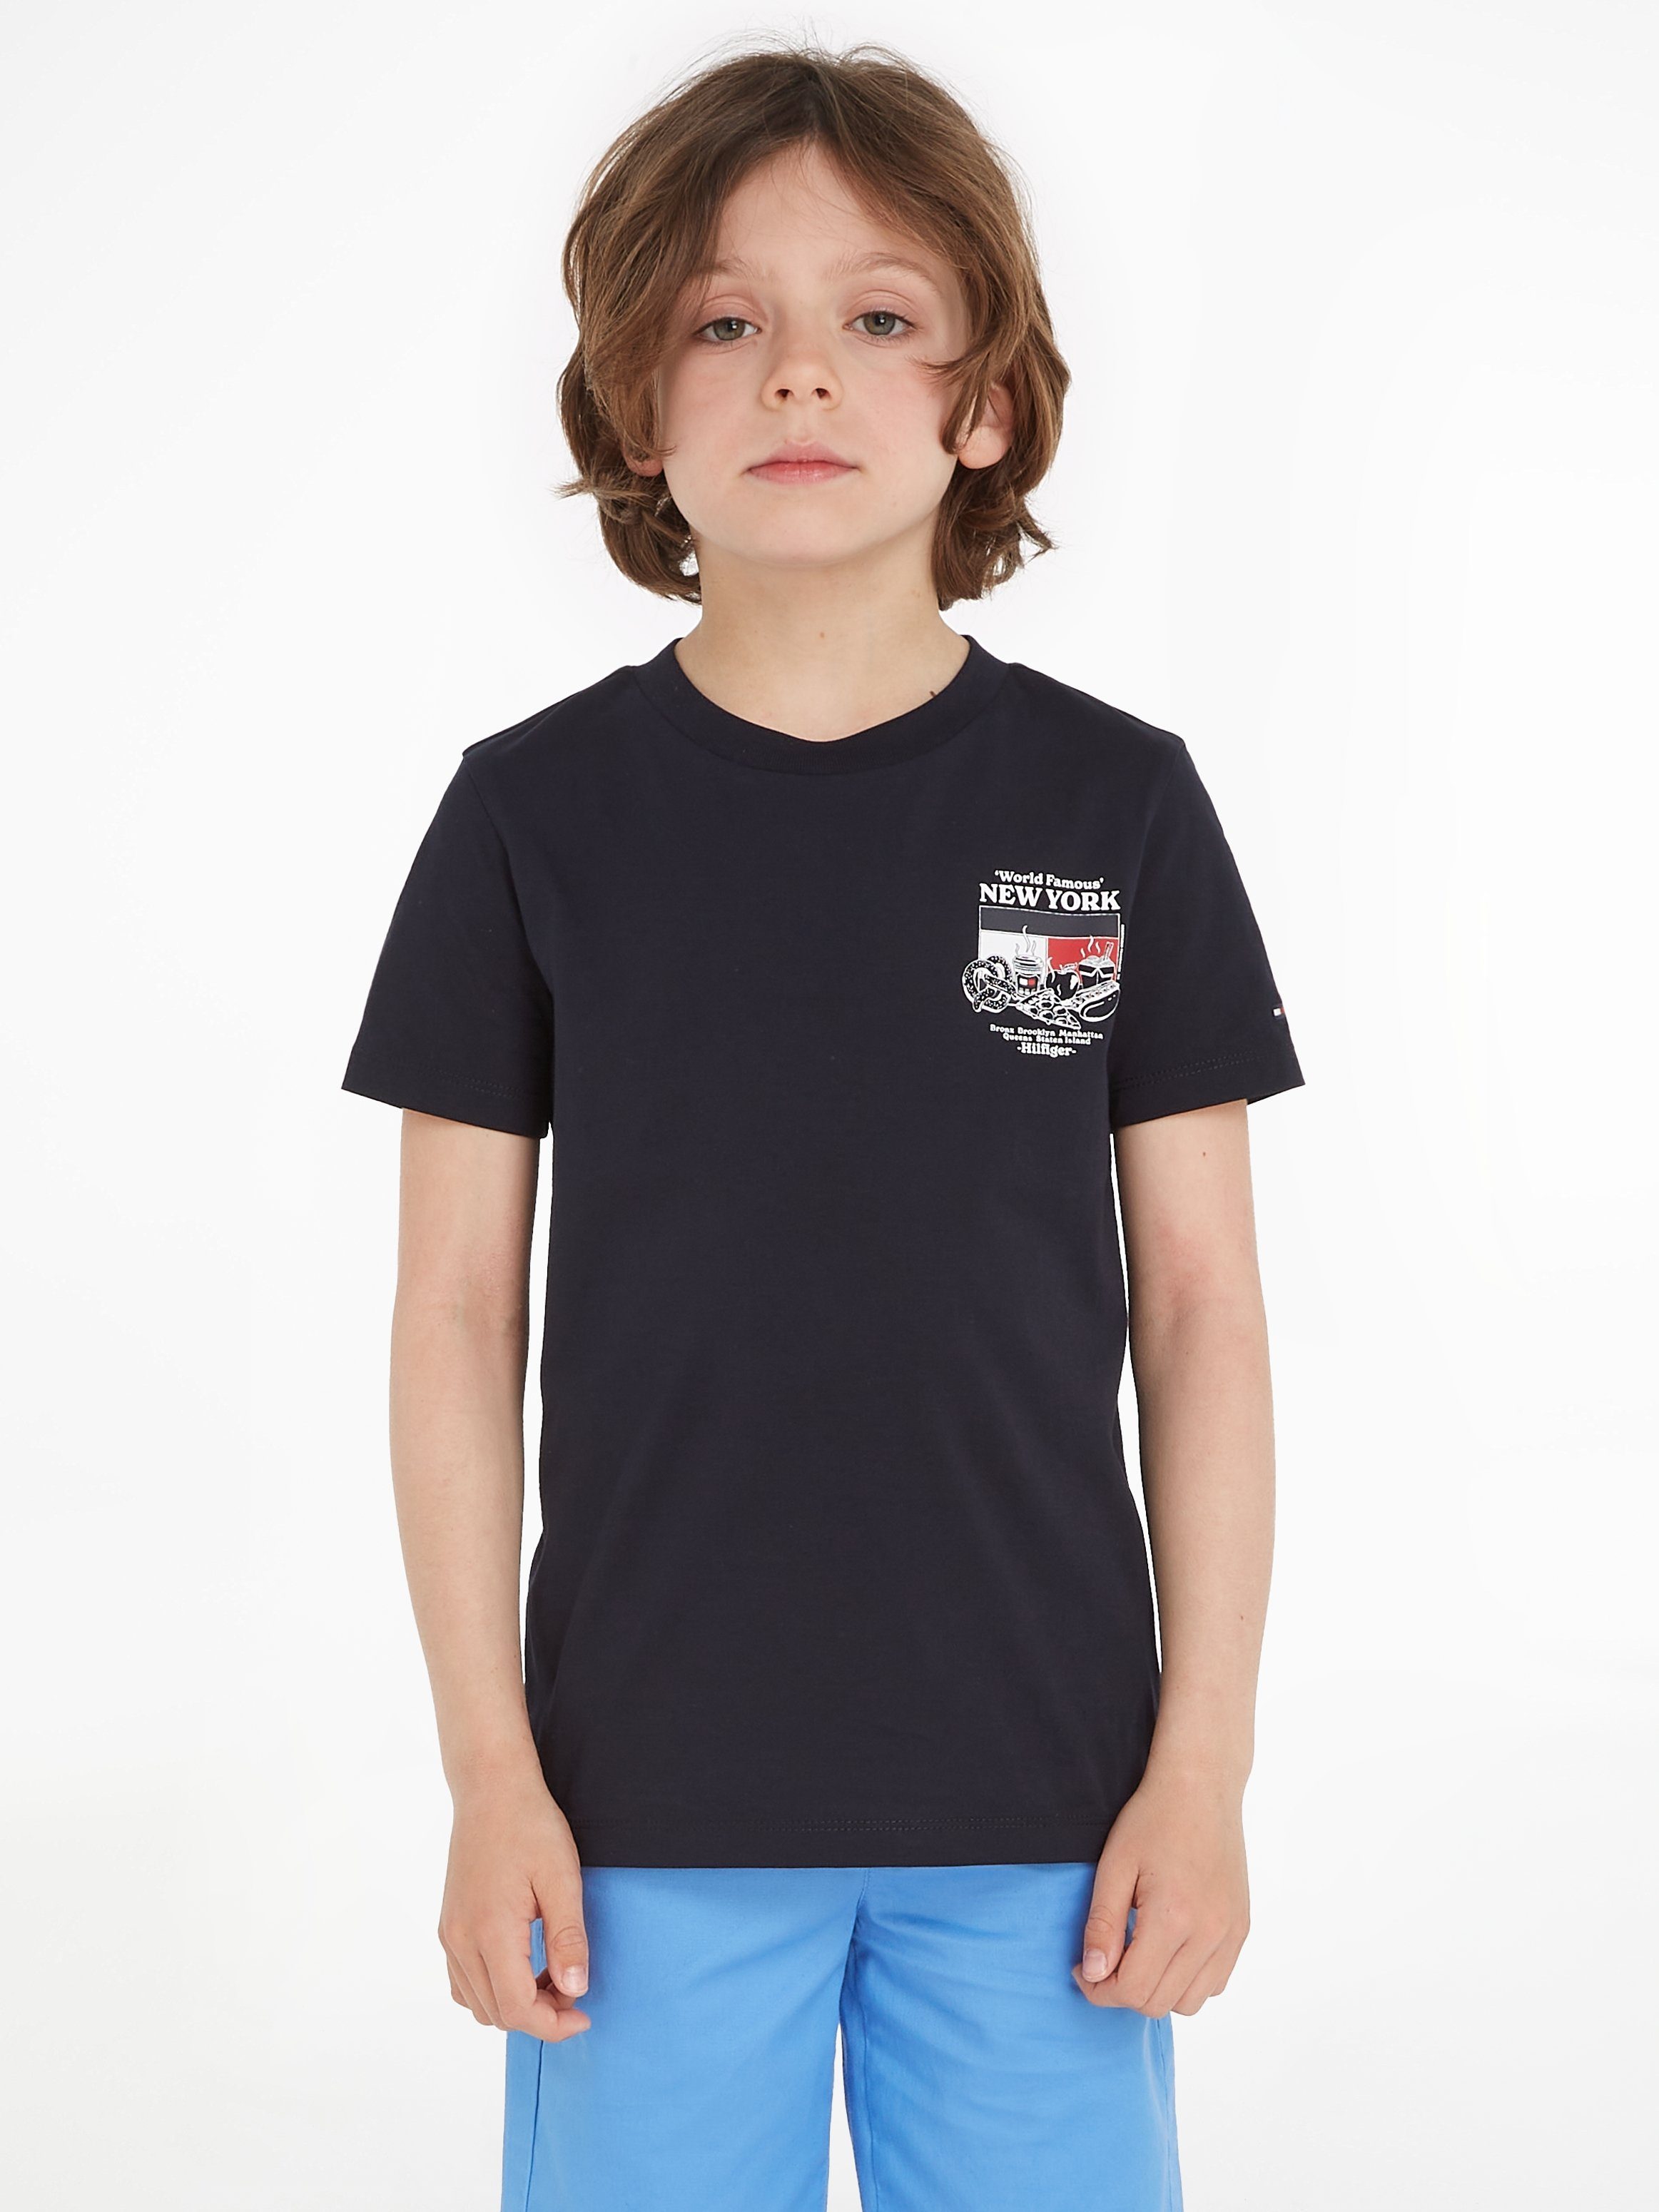 Tommy Hilfiger T-shirt FINEST met logo zwart Jongens Katoen Ronde hals 104